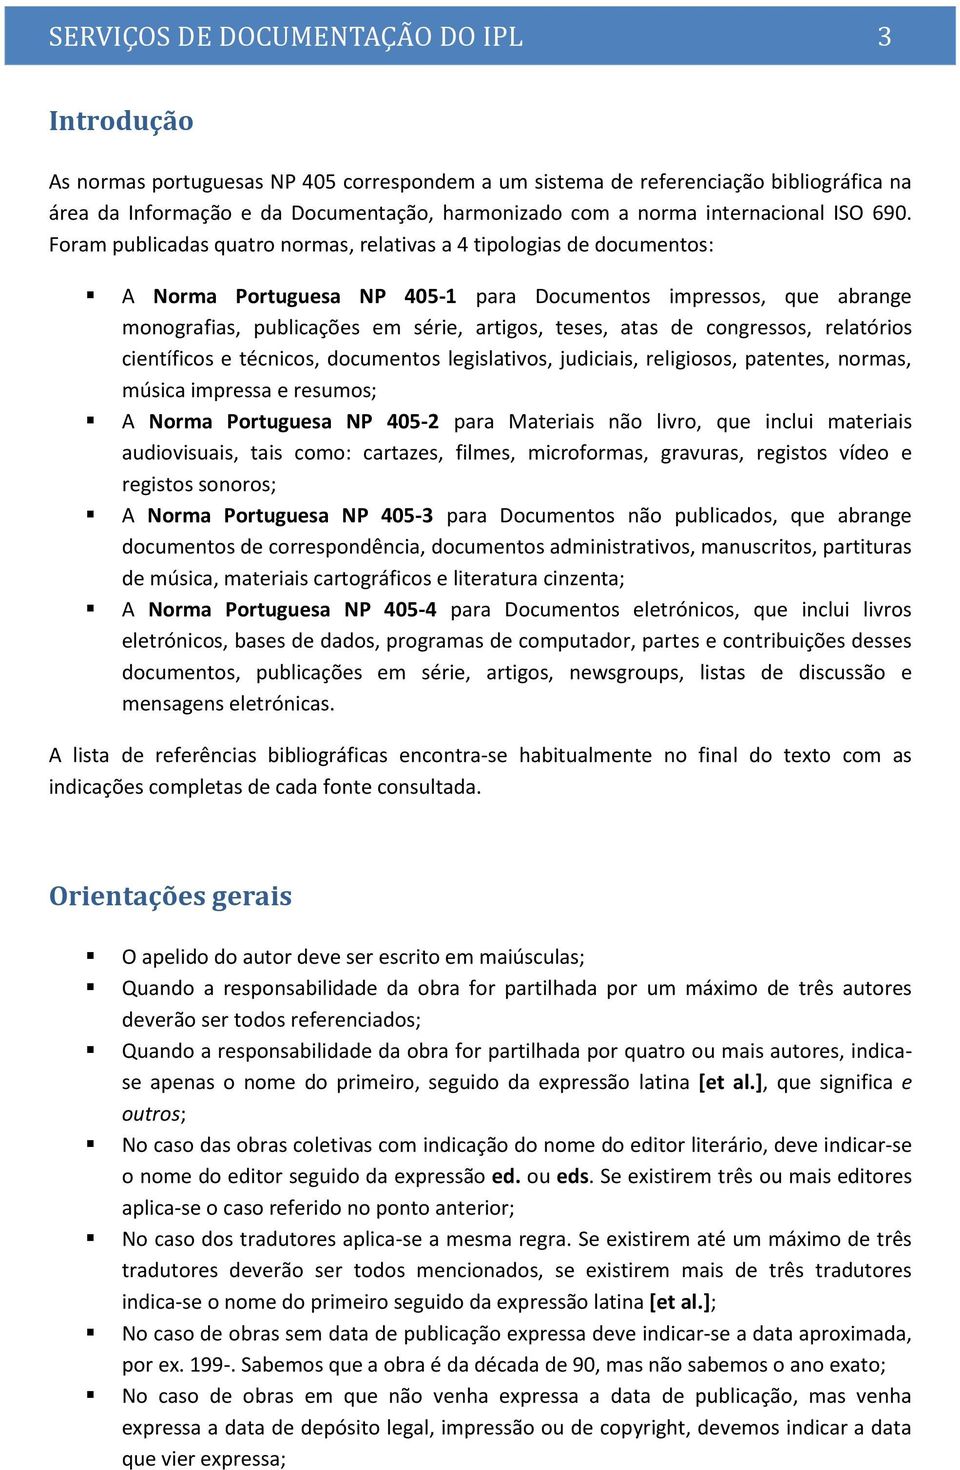 Foram publicadas quatro normas, relativas a 4 tipologias de documentos: A Norma Portuguesa NP 405-1 para Documentos impressos, que abrange monografias, publicações em série, artigos, teses, atas de